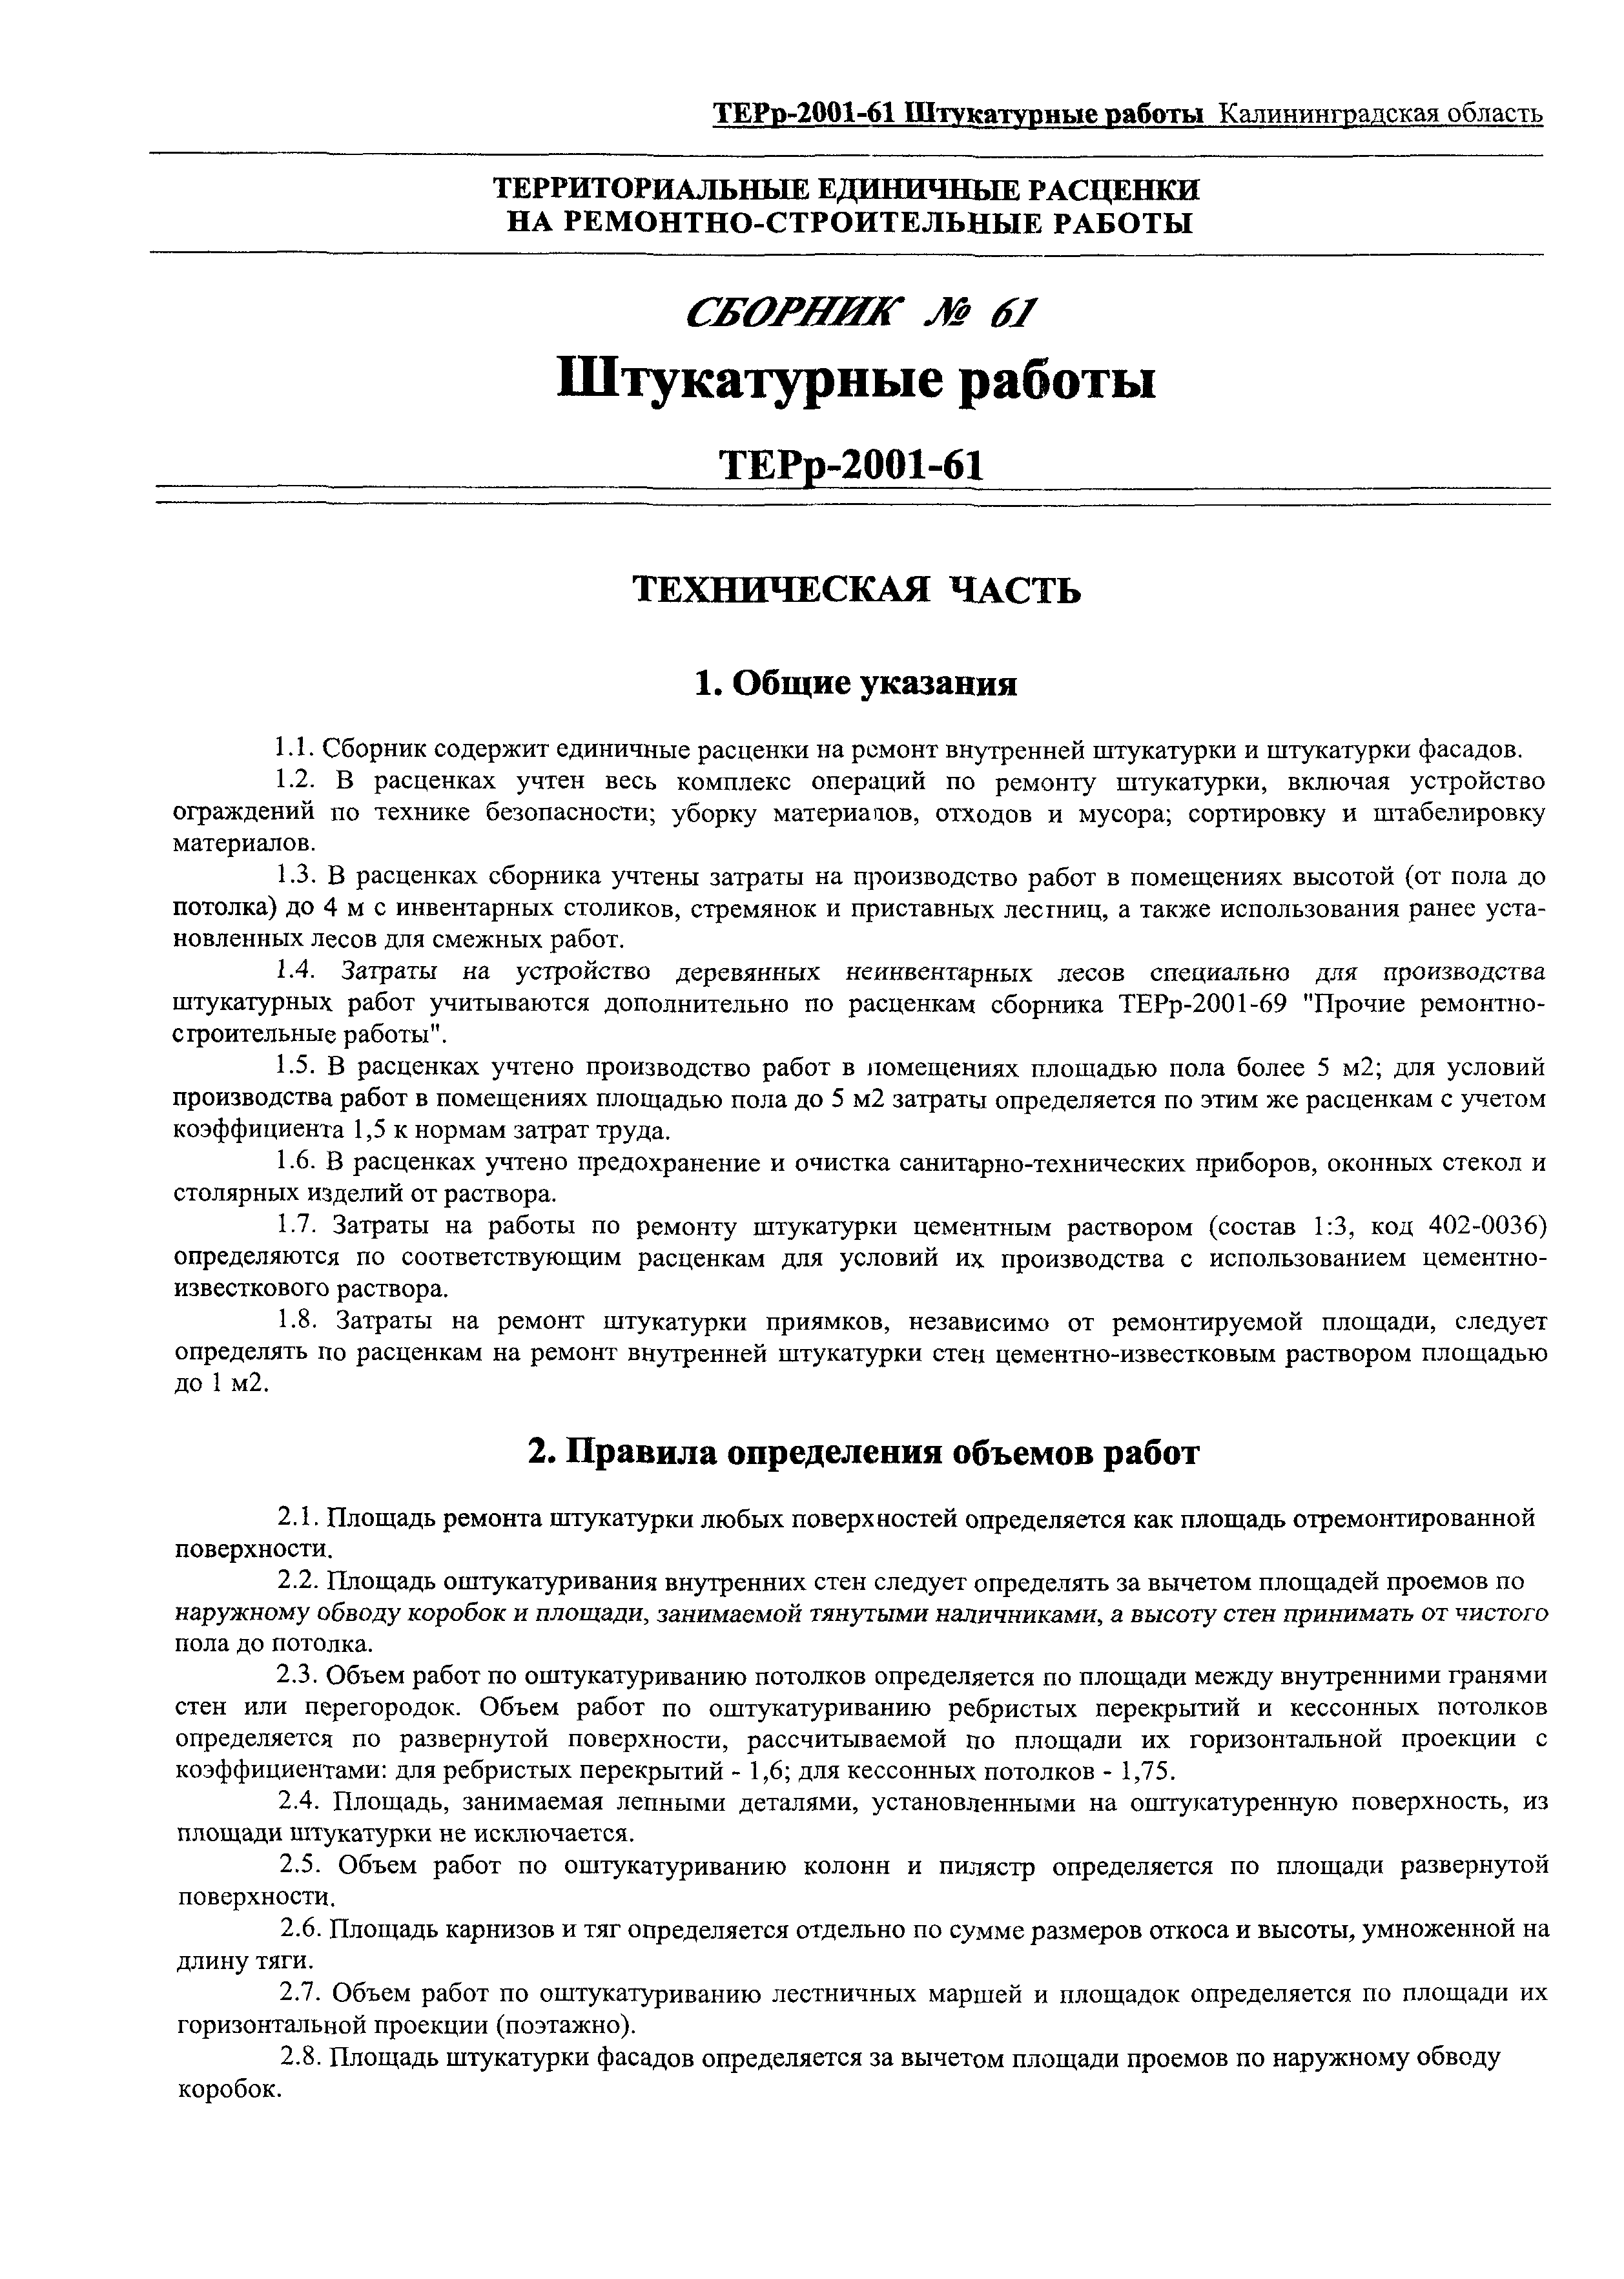 ТЕРр Калининградской области 2001-61